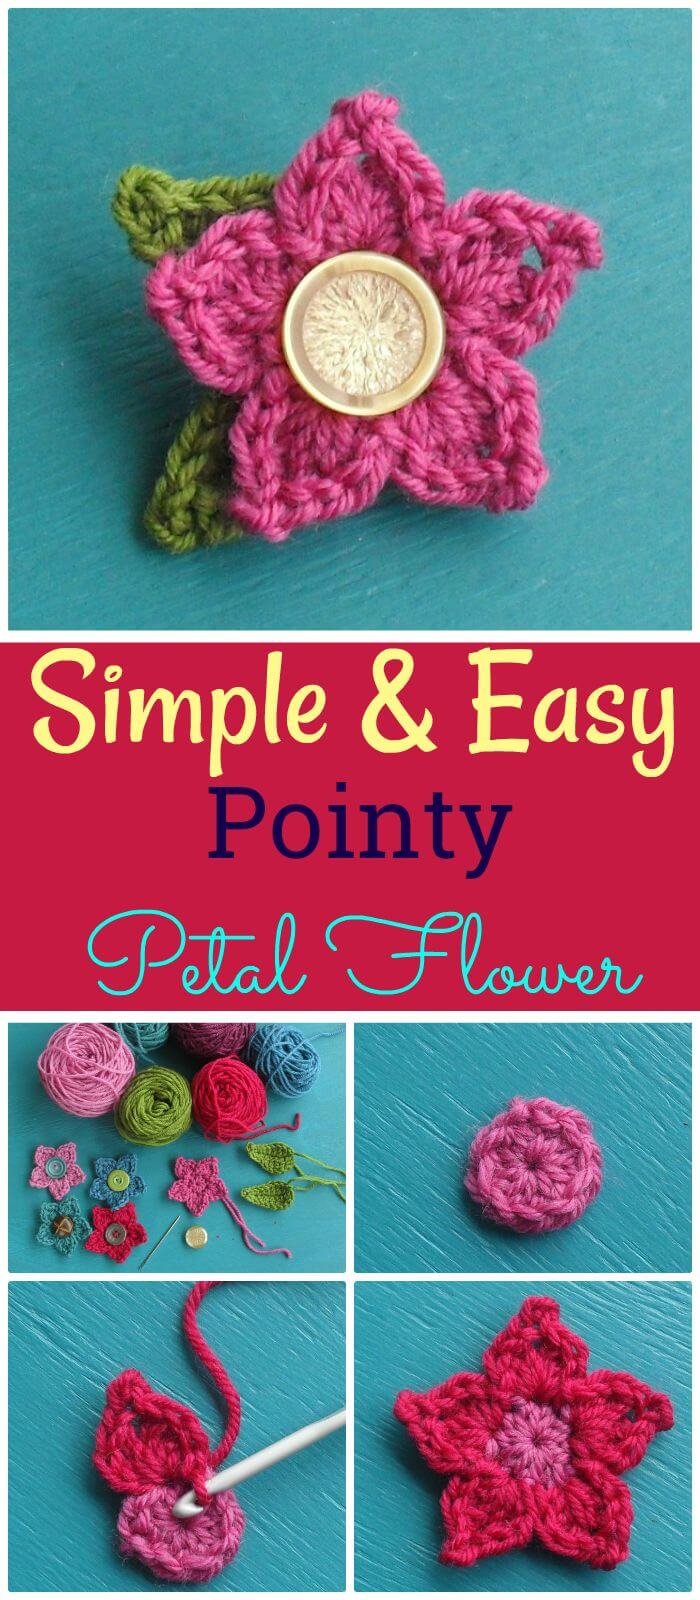 Simple Crochet Rose Pattern Crochet Flowers 90 Free Crochet Flower Patterns Diy Crafts